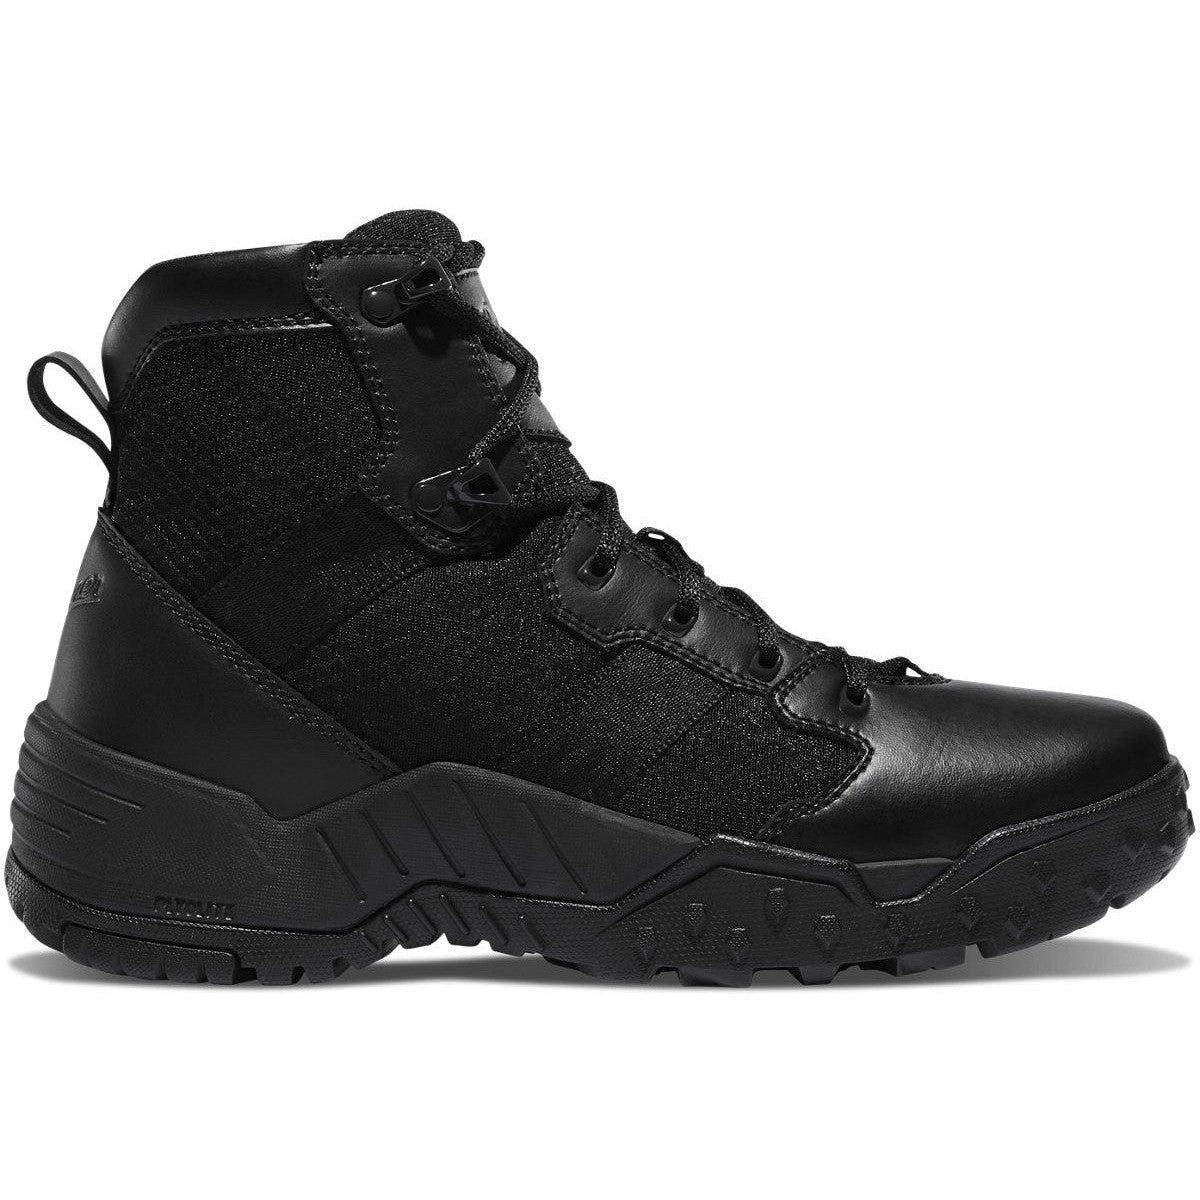 Danner Men's Scorch 6" Side Zip Slip Resistant Duty Boot -Black- 25730 6 / Medium / Black - Overlook Boots